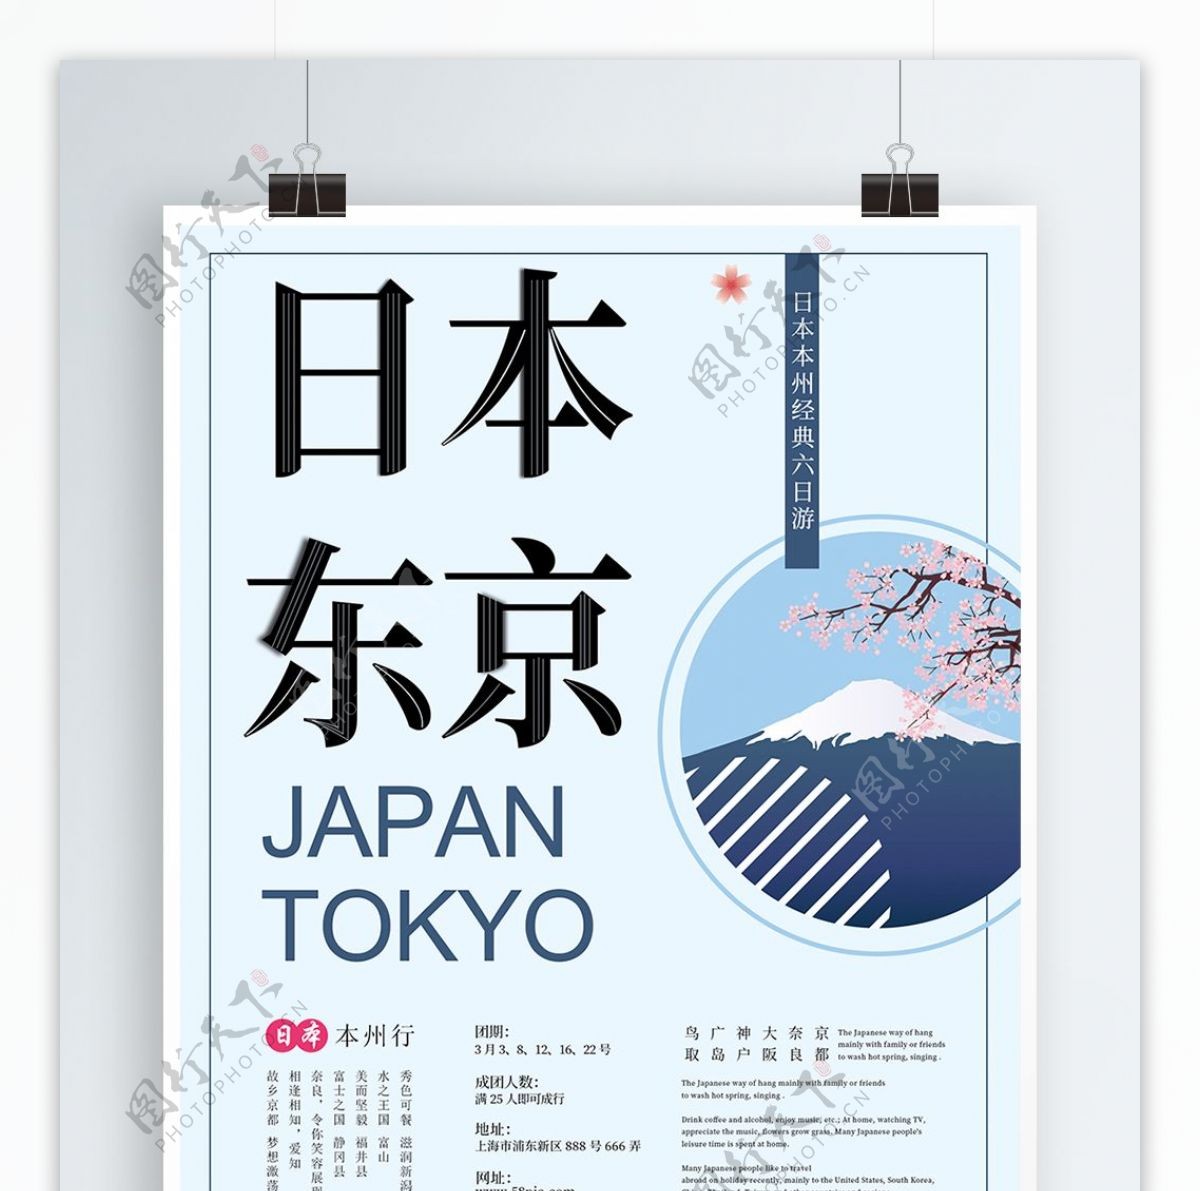 极简手绘风日本东京旅游宣传促销海报